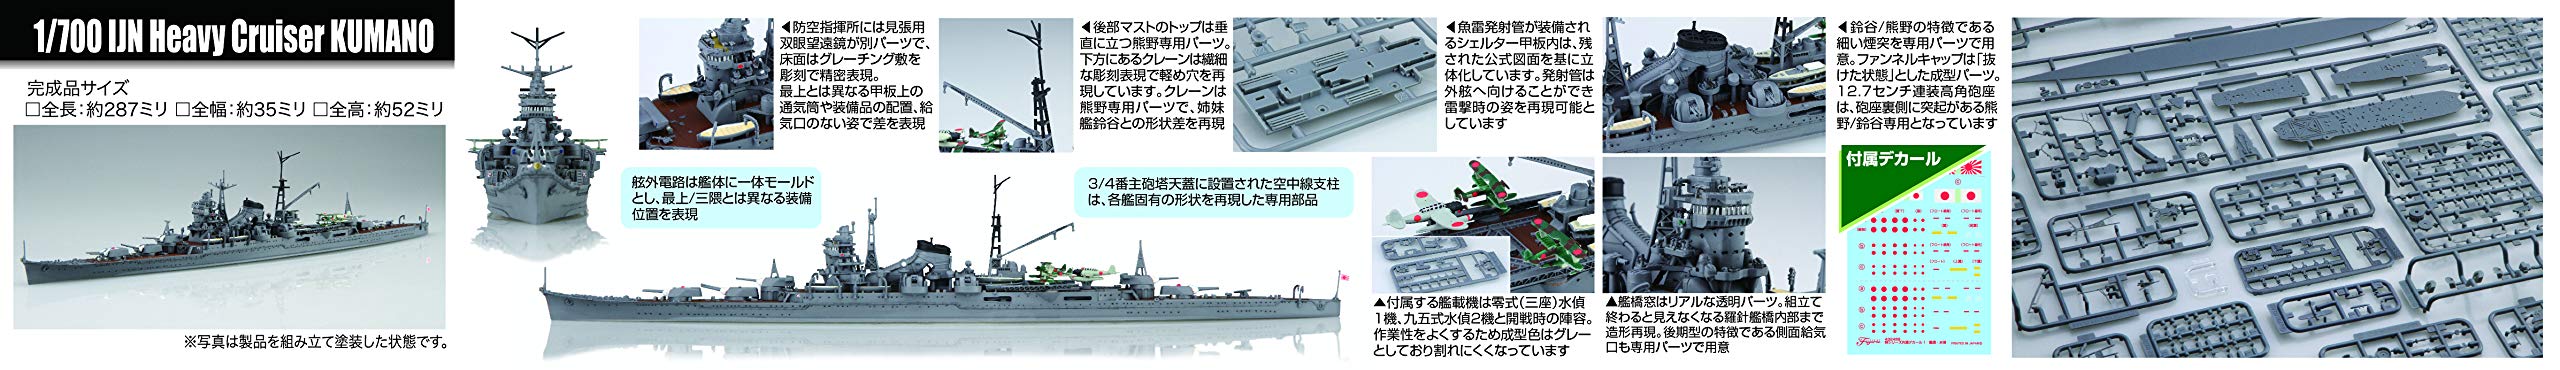 Fujimi Model 1/700 Special Series No.20 Japanese Navy Heavy Cruiser Kumano (Showa 17) Special 20